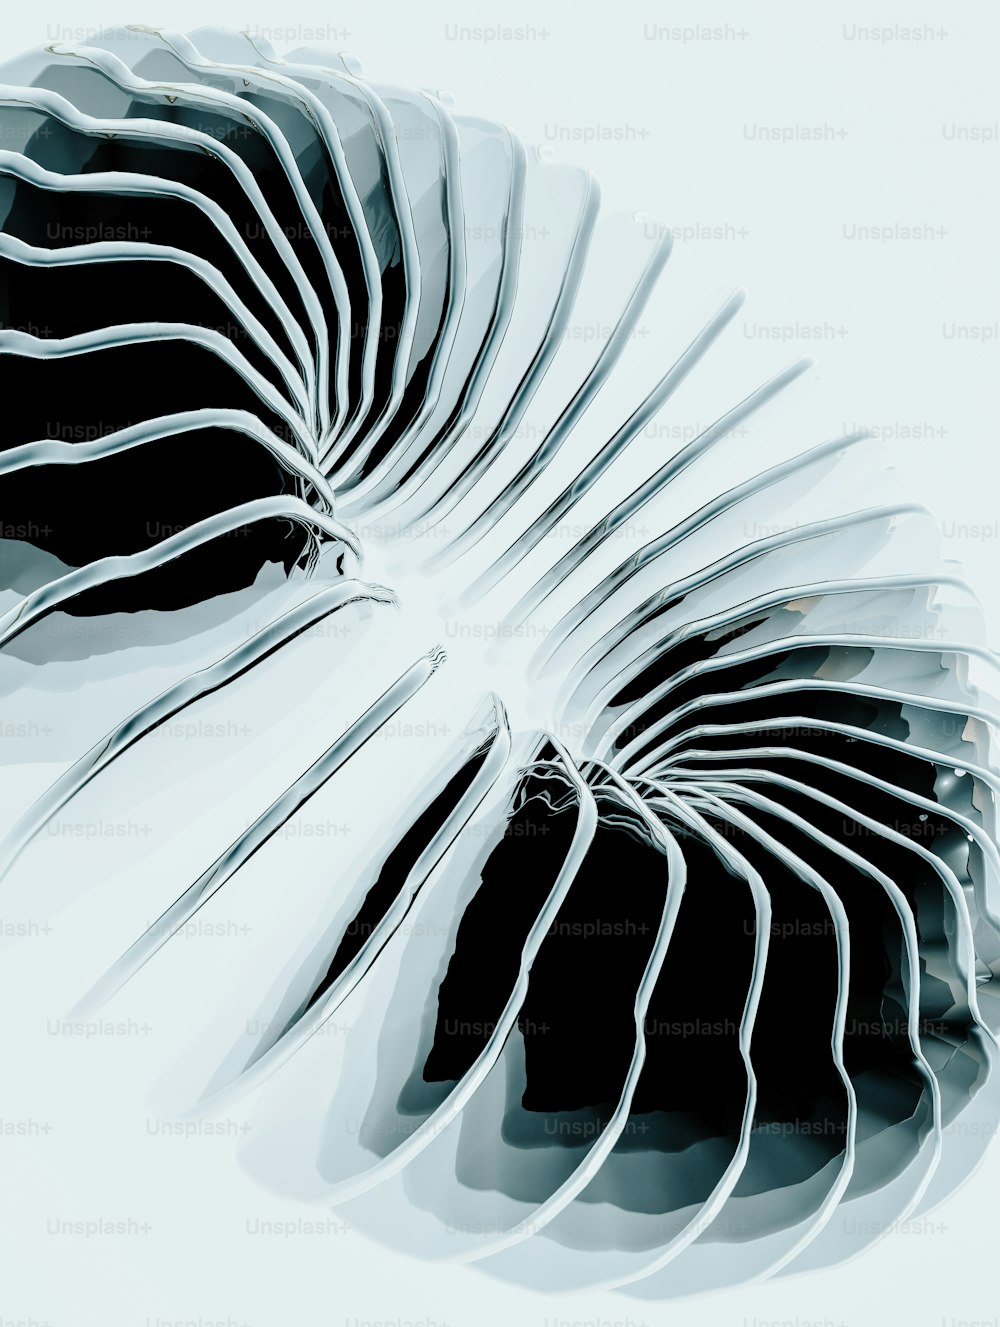 Una foto in bianco e nero di un oggetto a forma di spirale